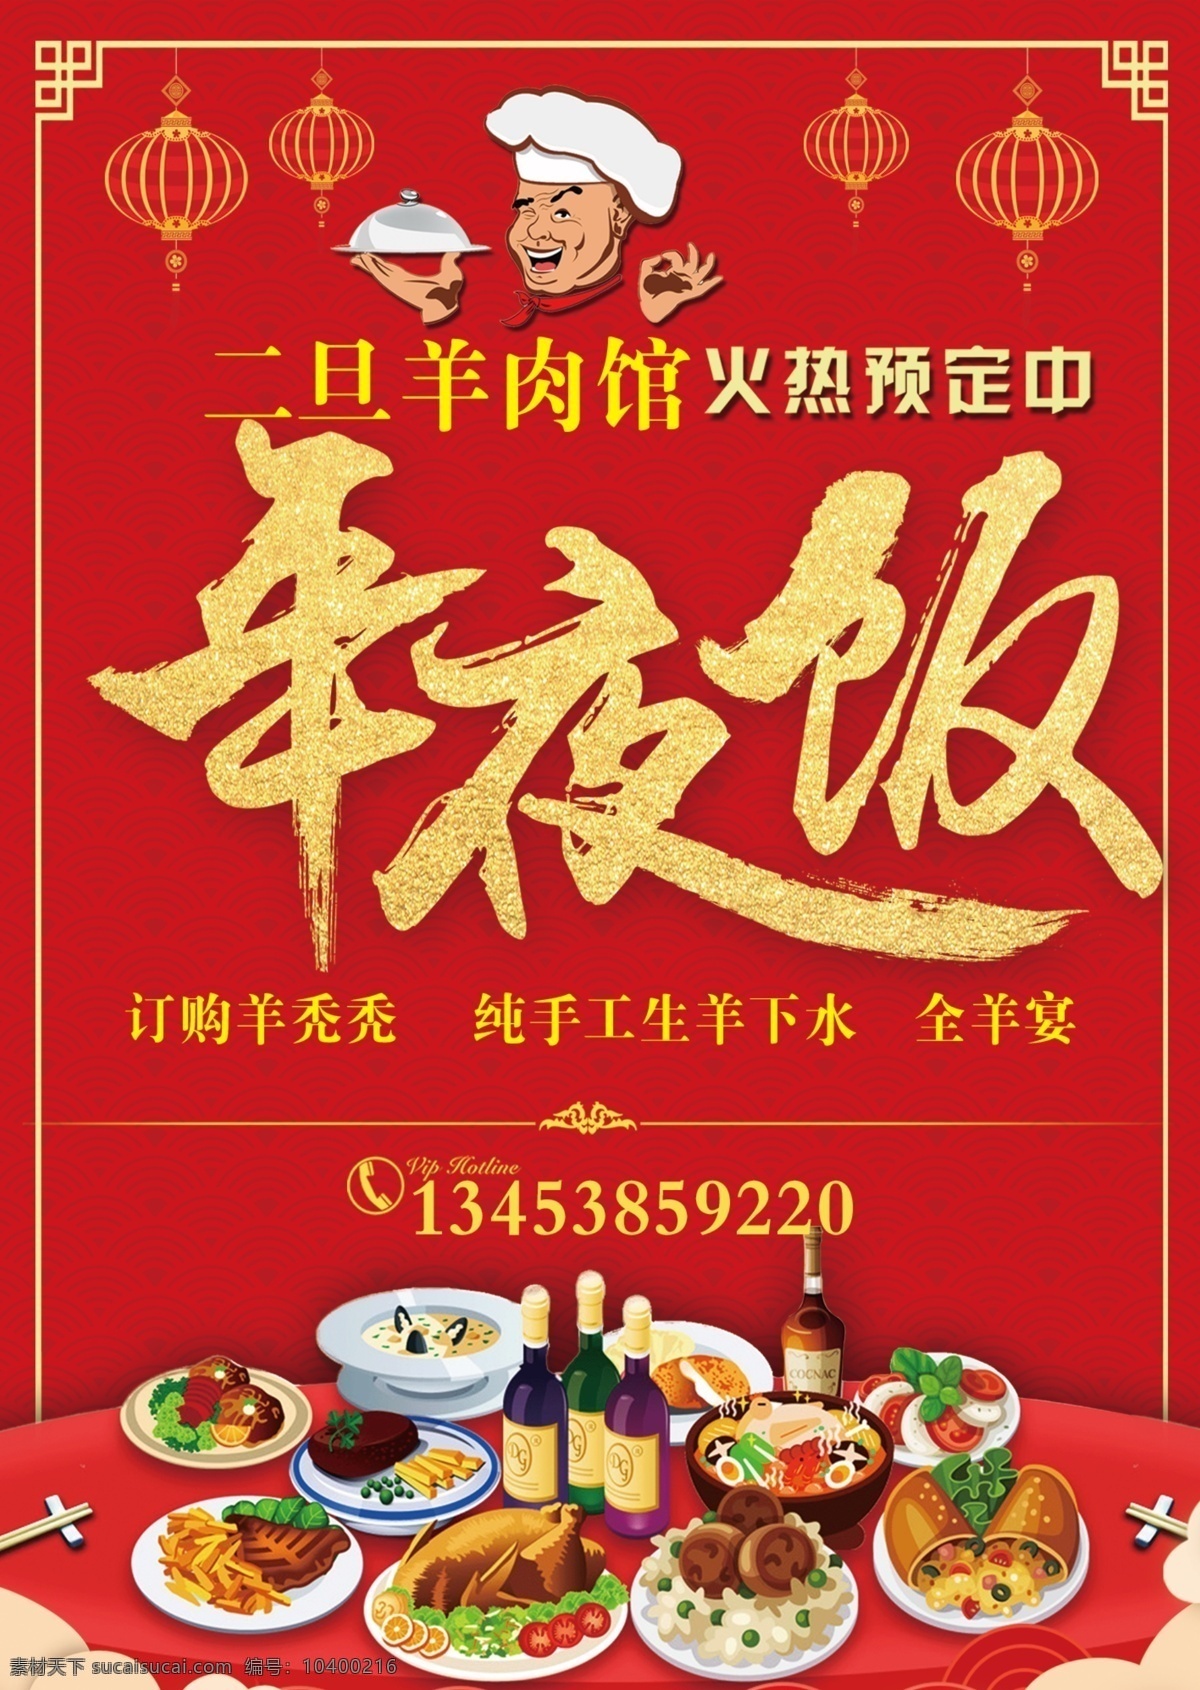 春节 年夜饭背景 年夜饭模版 年夜饭预订 室内广告设计